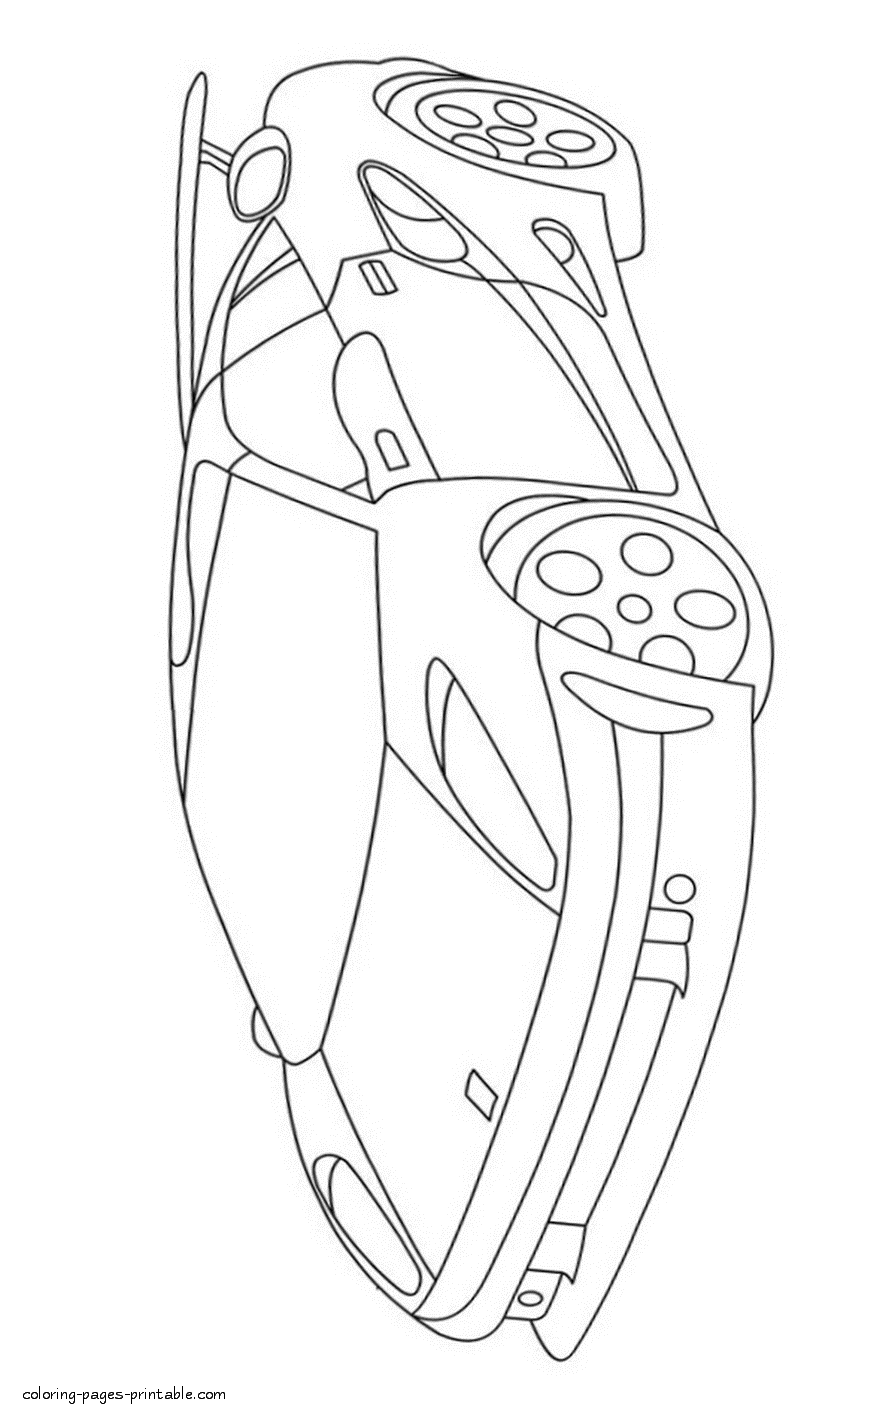 Ferrari F355 Spider coloring page